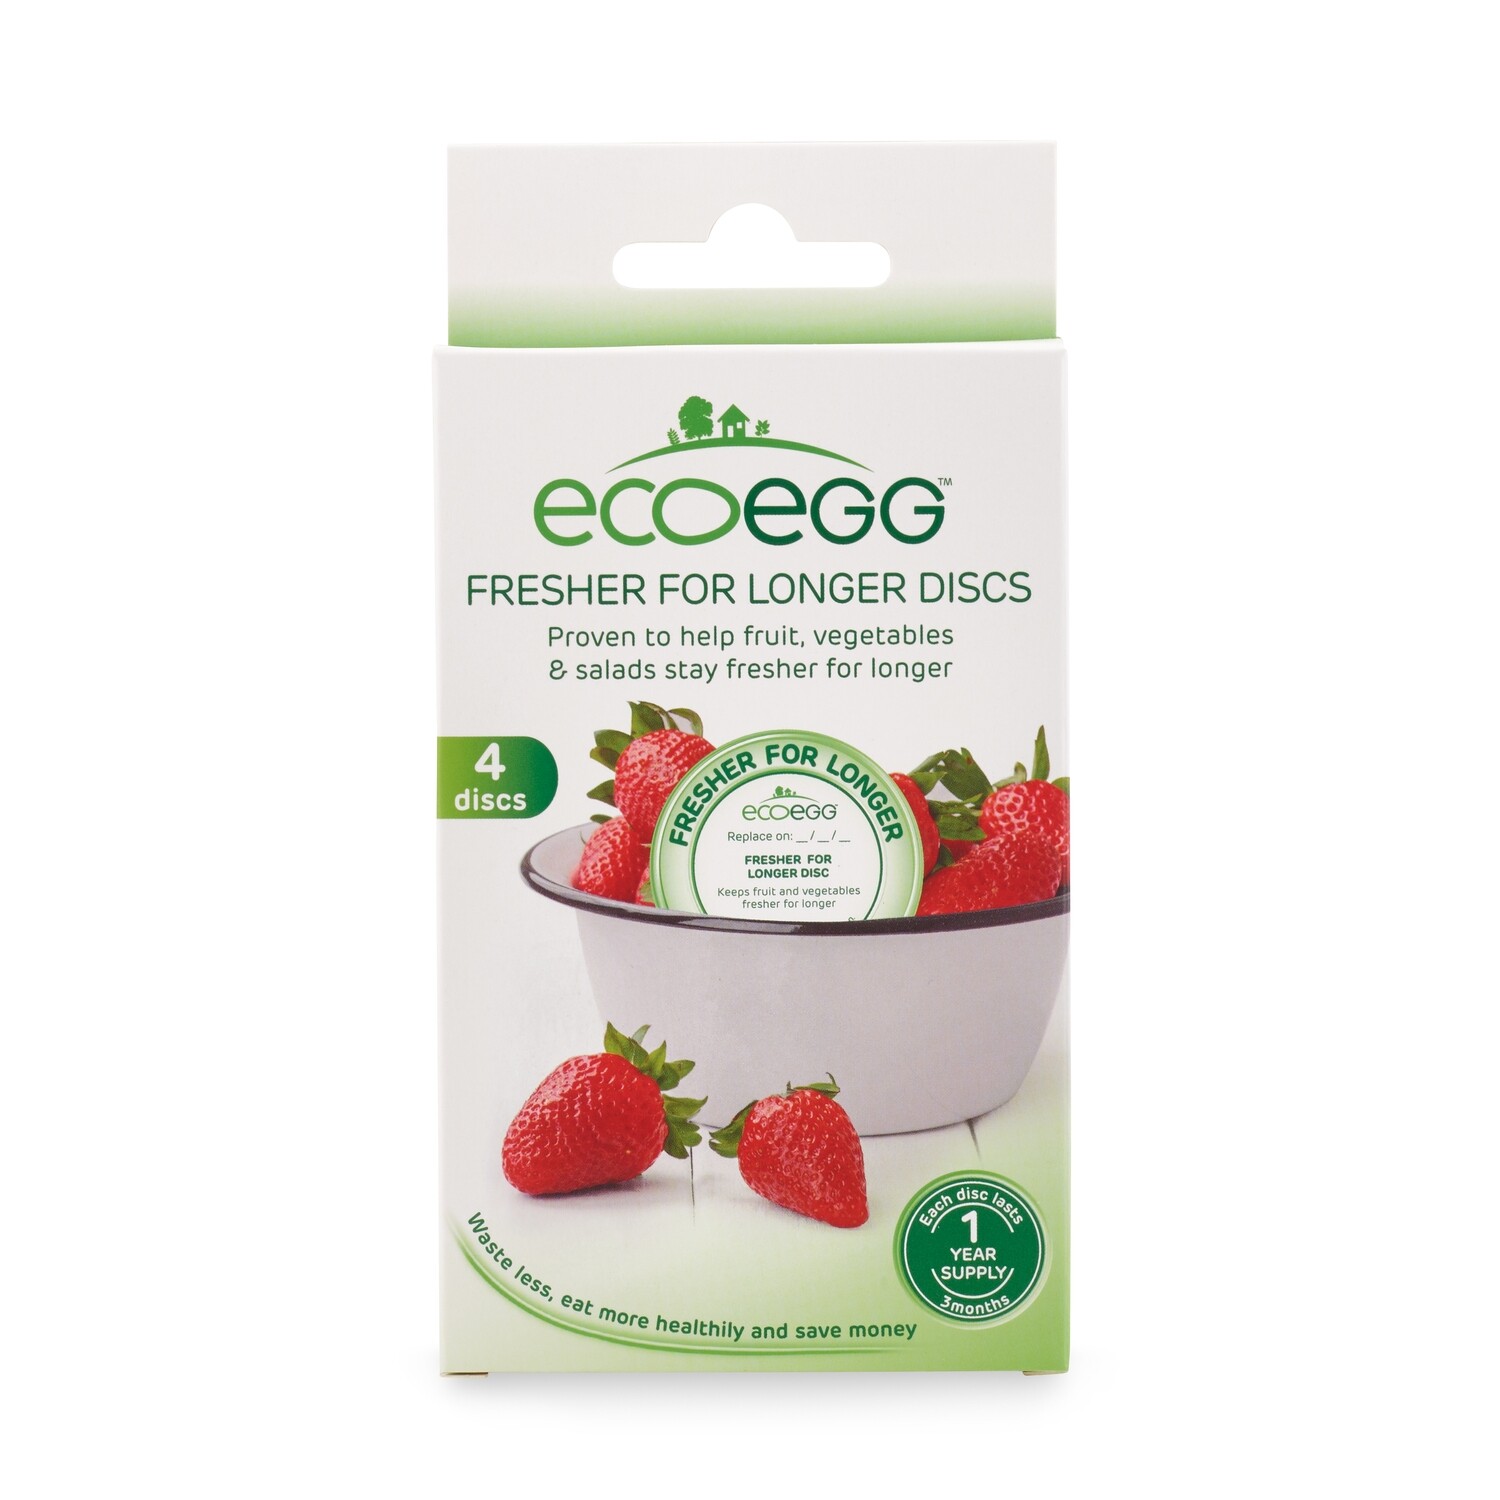 ECOEGG - Fresher for longer Disc (4 Discs Pack)